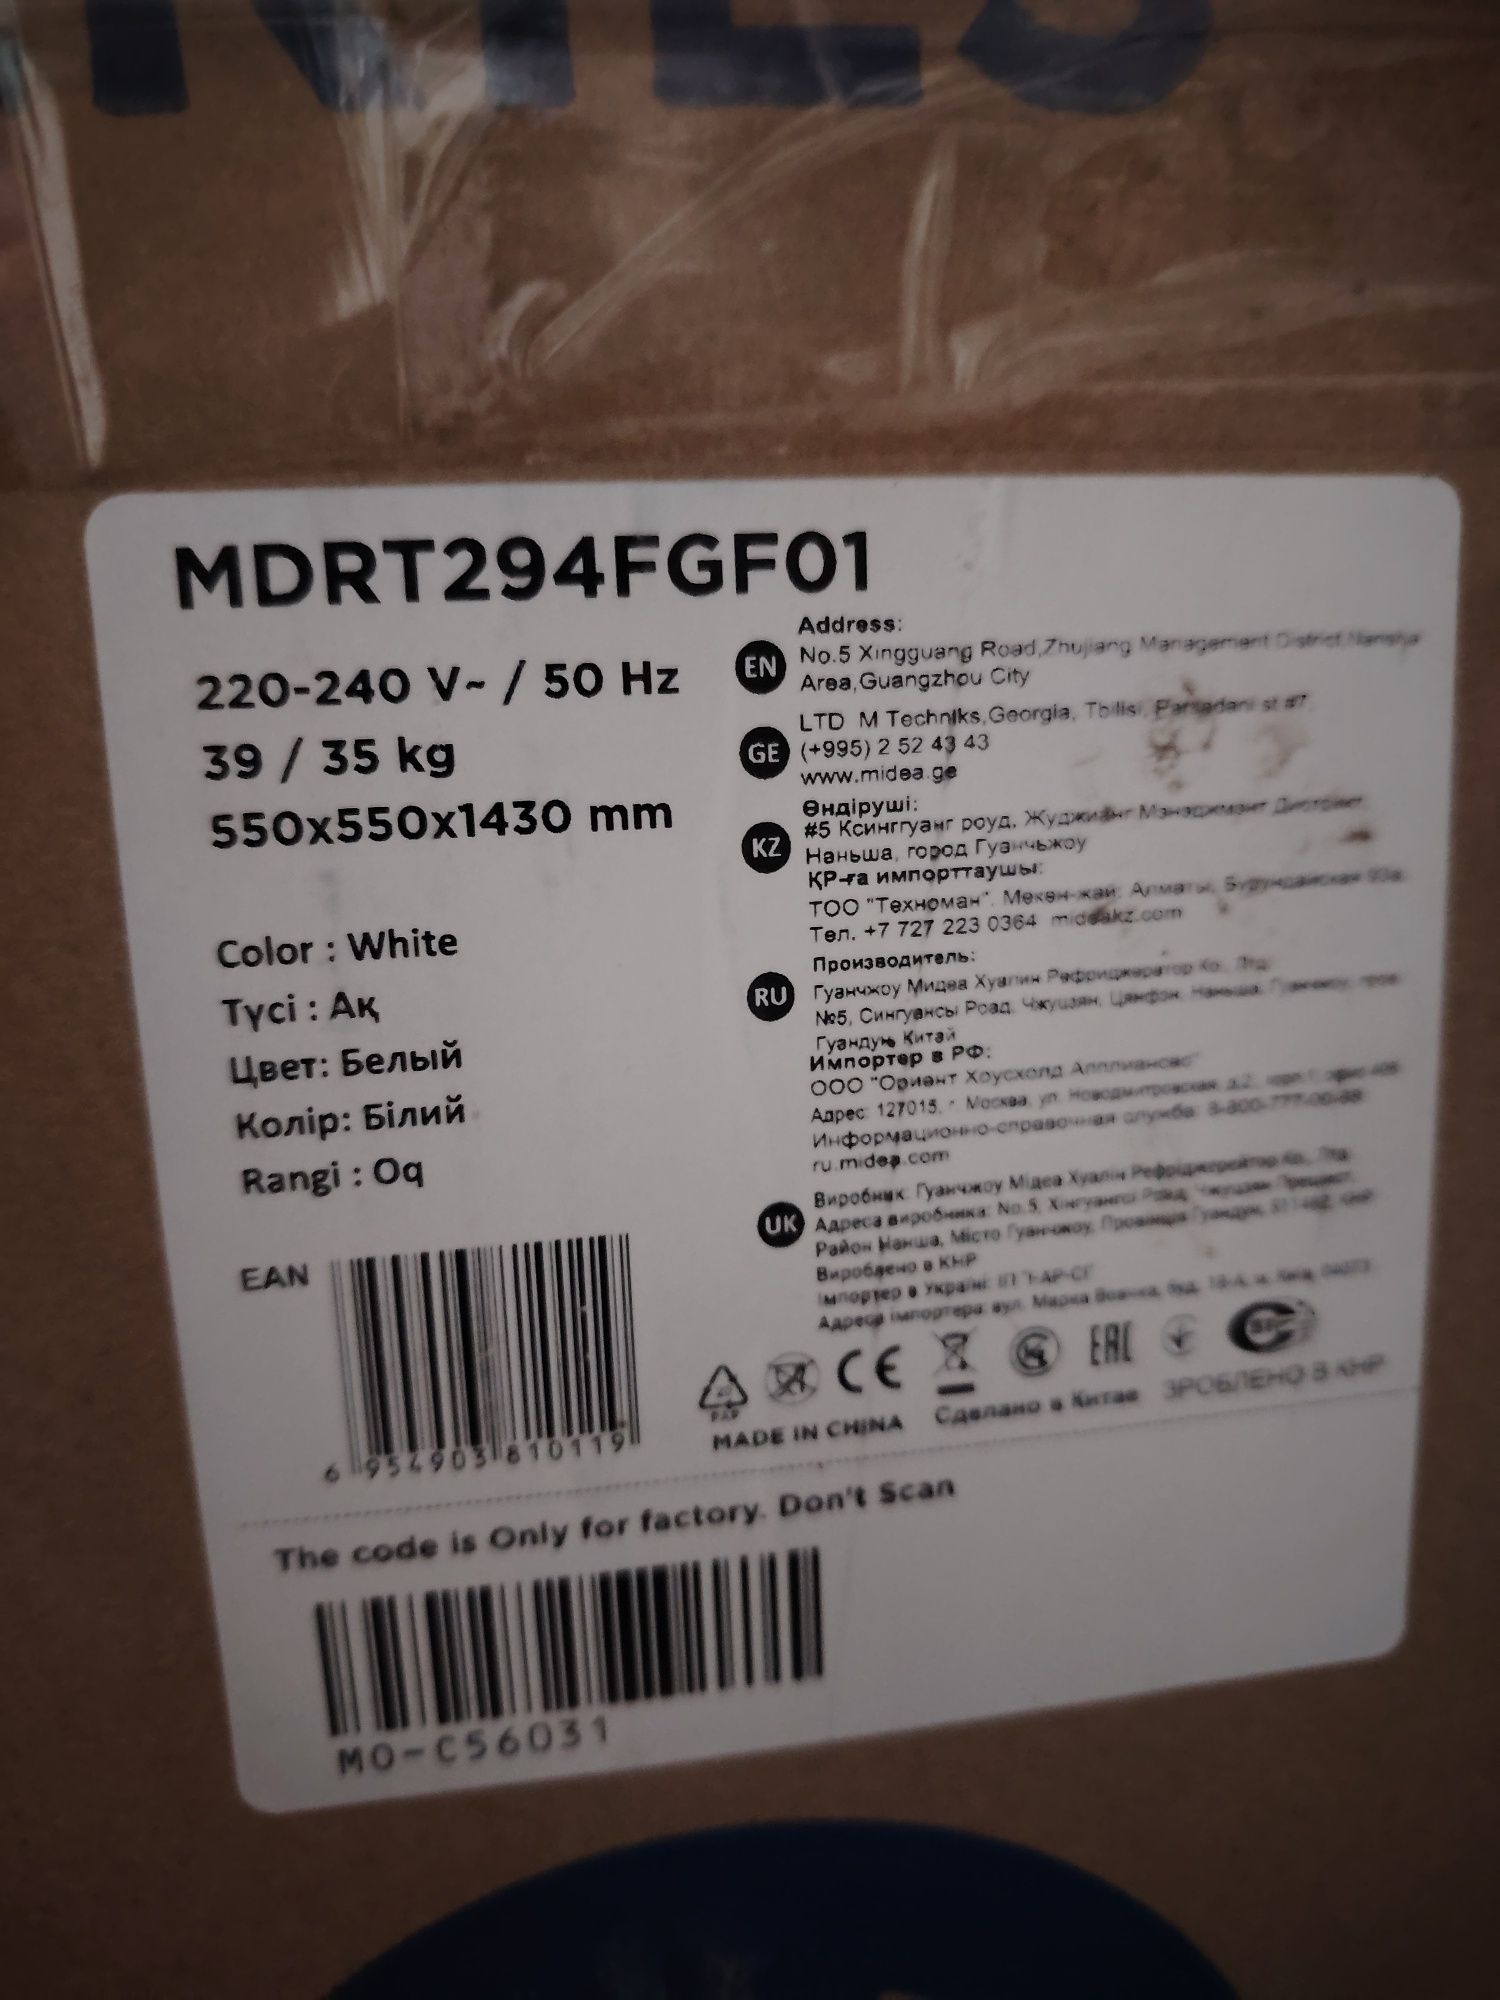 Продам почти новый холодильник модель MDRT294FGFO1  в коробке.